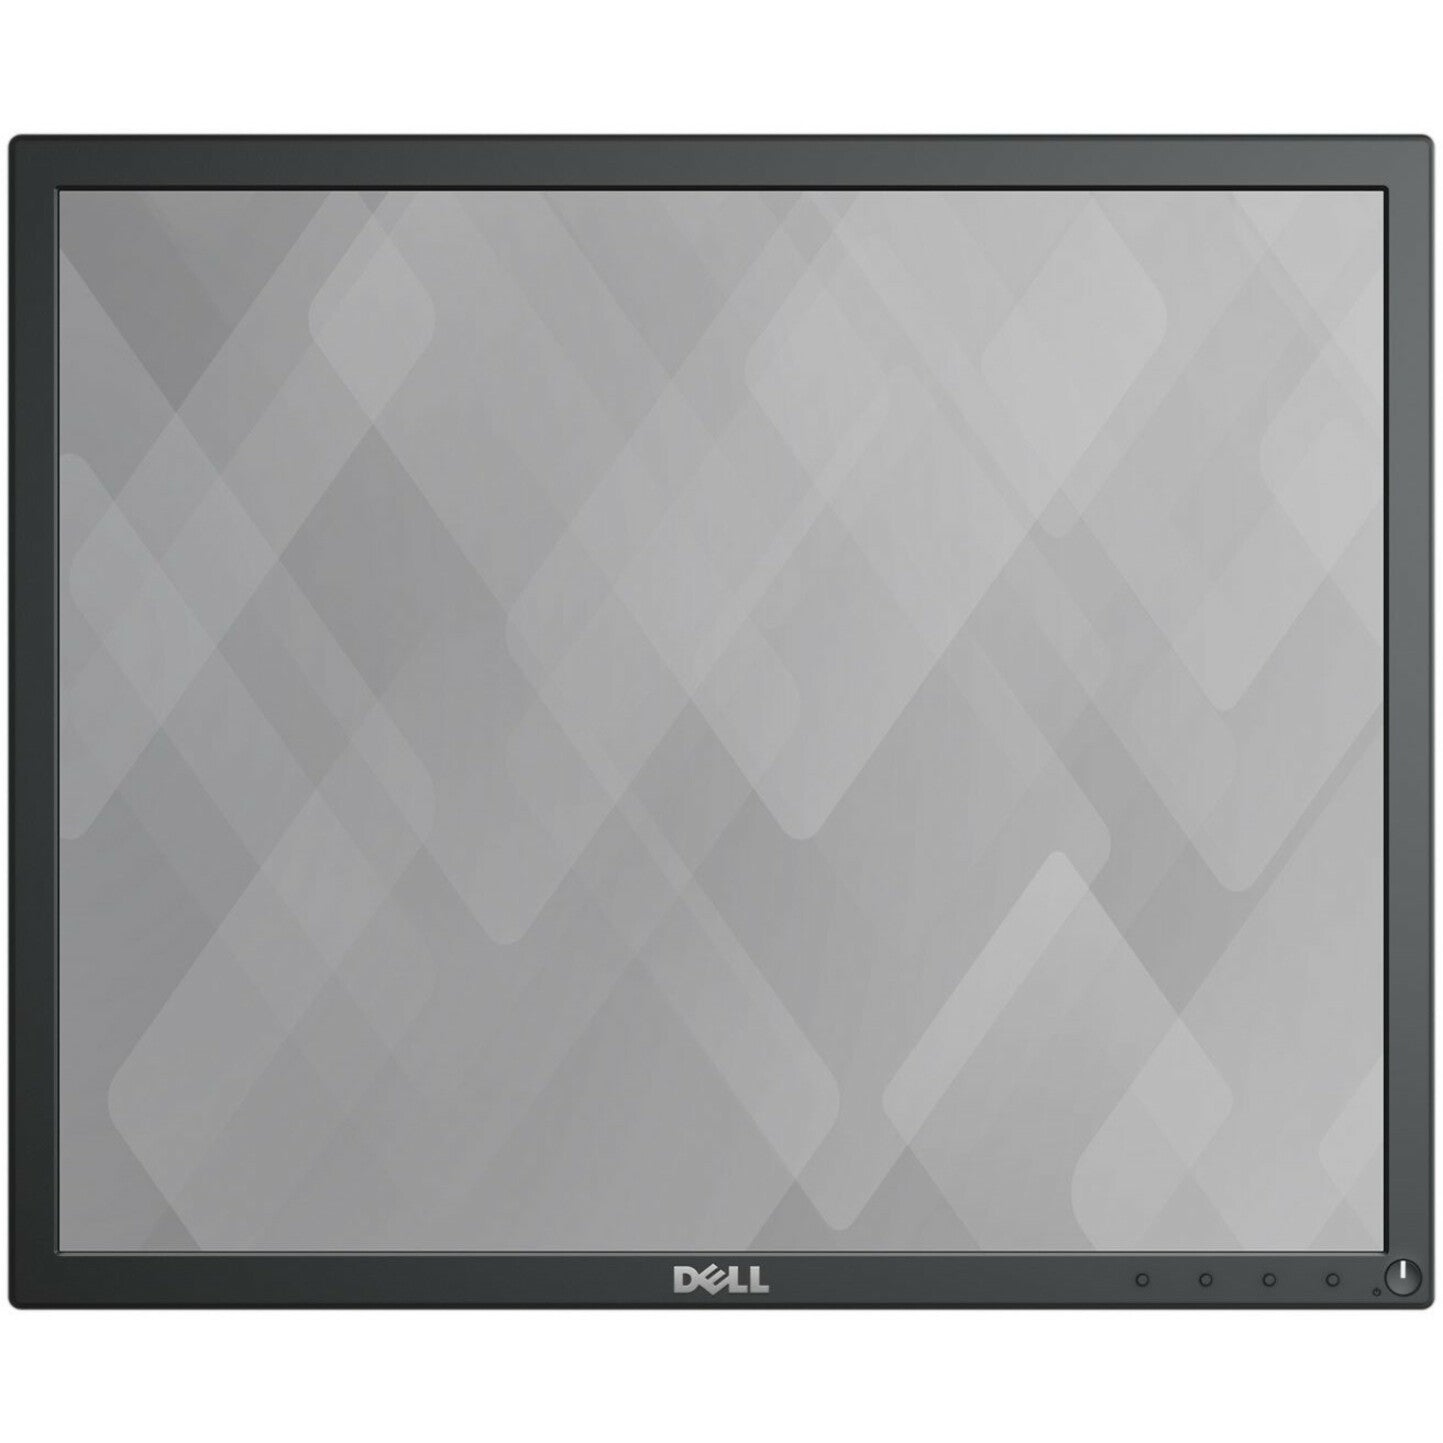 Dell P1917S 19" SXGA LCD Monitor - 5:4 - Black